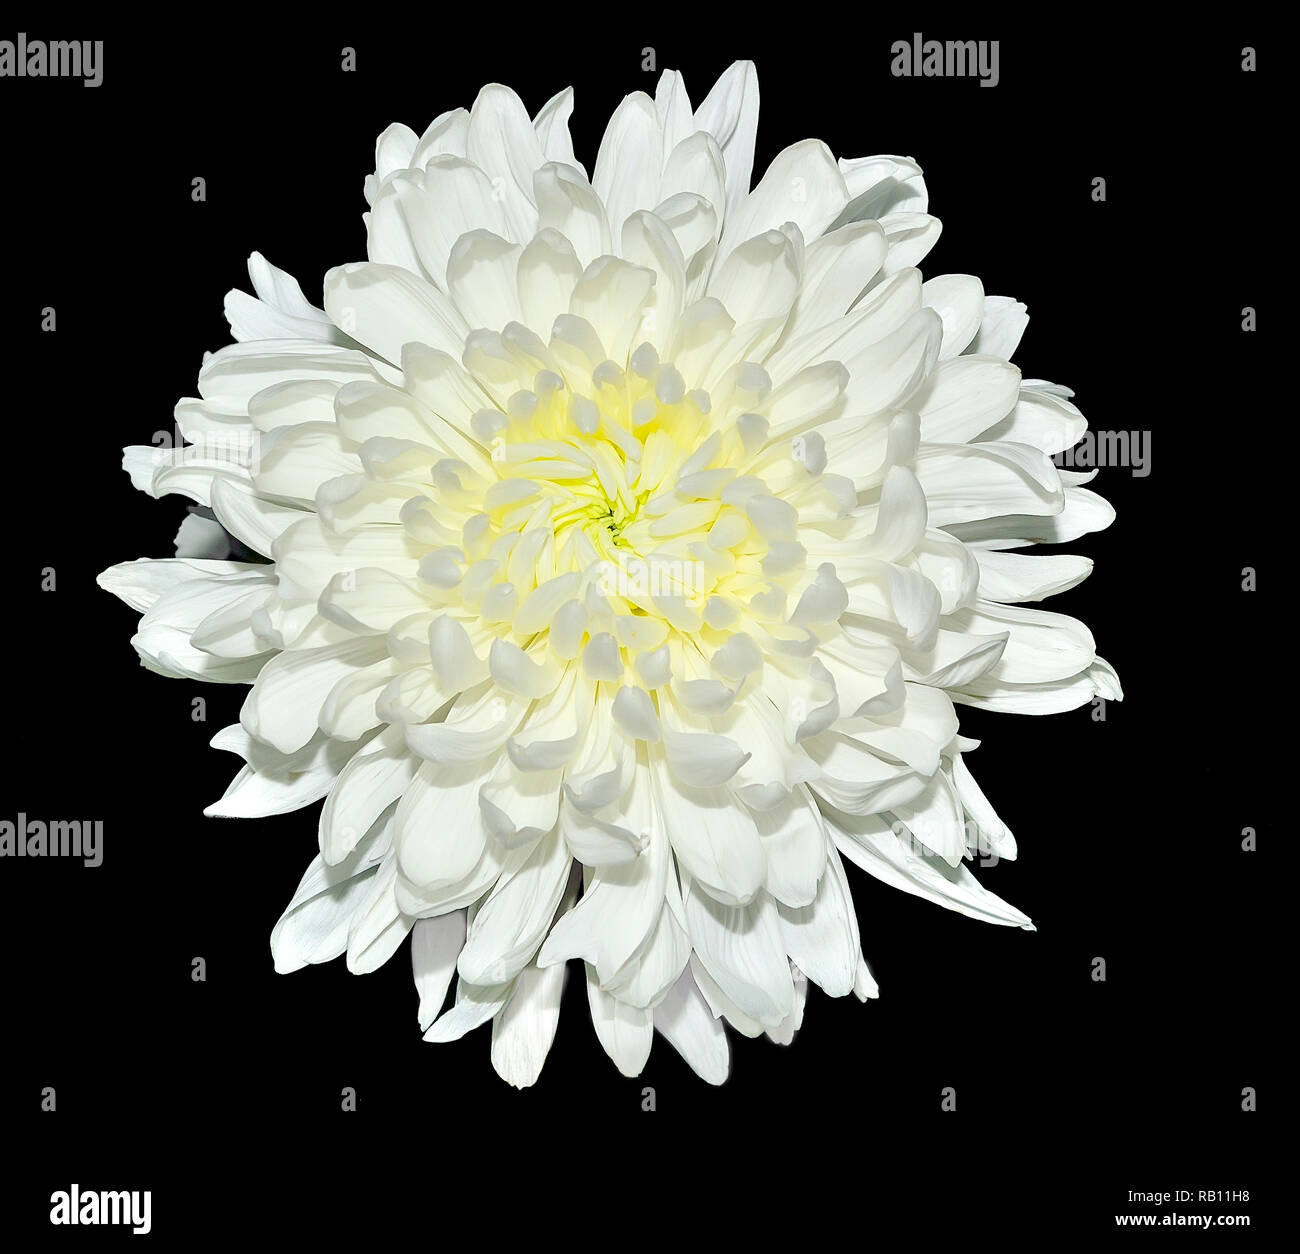 Einzelne weiße Chrysantheme Blume mit gelber Mitte, auf einem schwarzen Hintergrund. Schöne elegante flowerhead mit zarten Blütenblätter Stockfoto